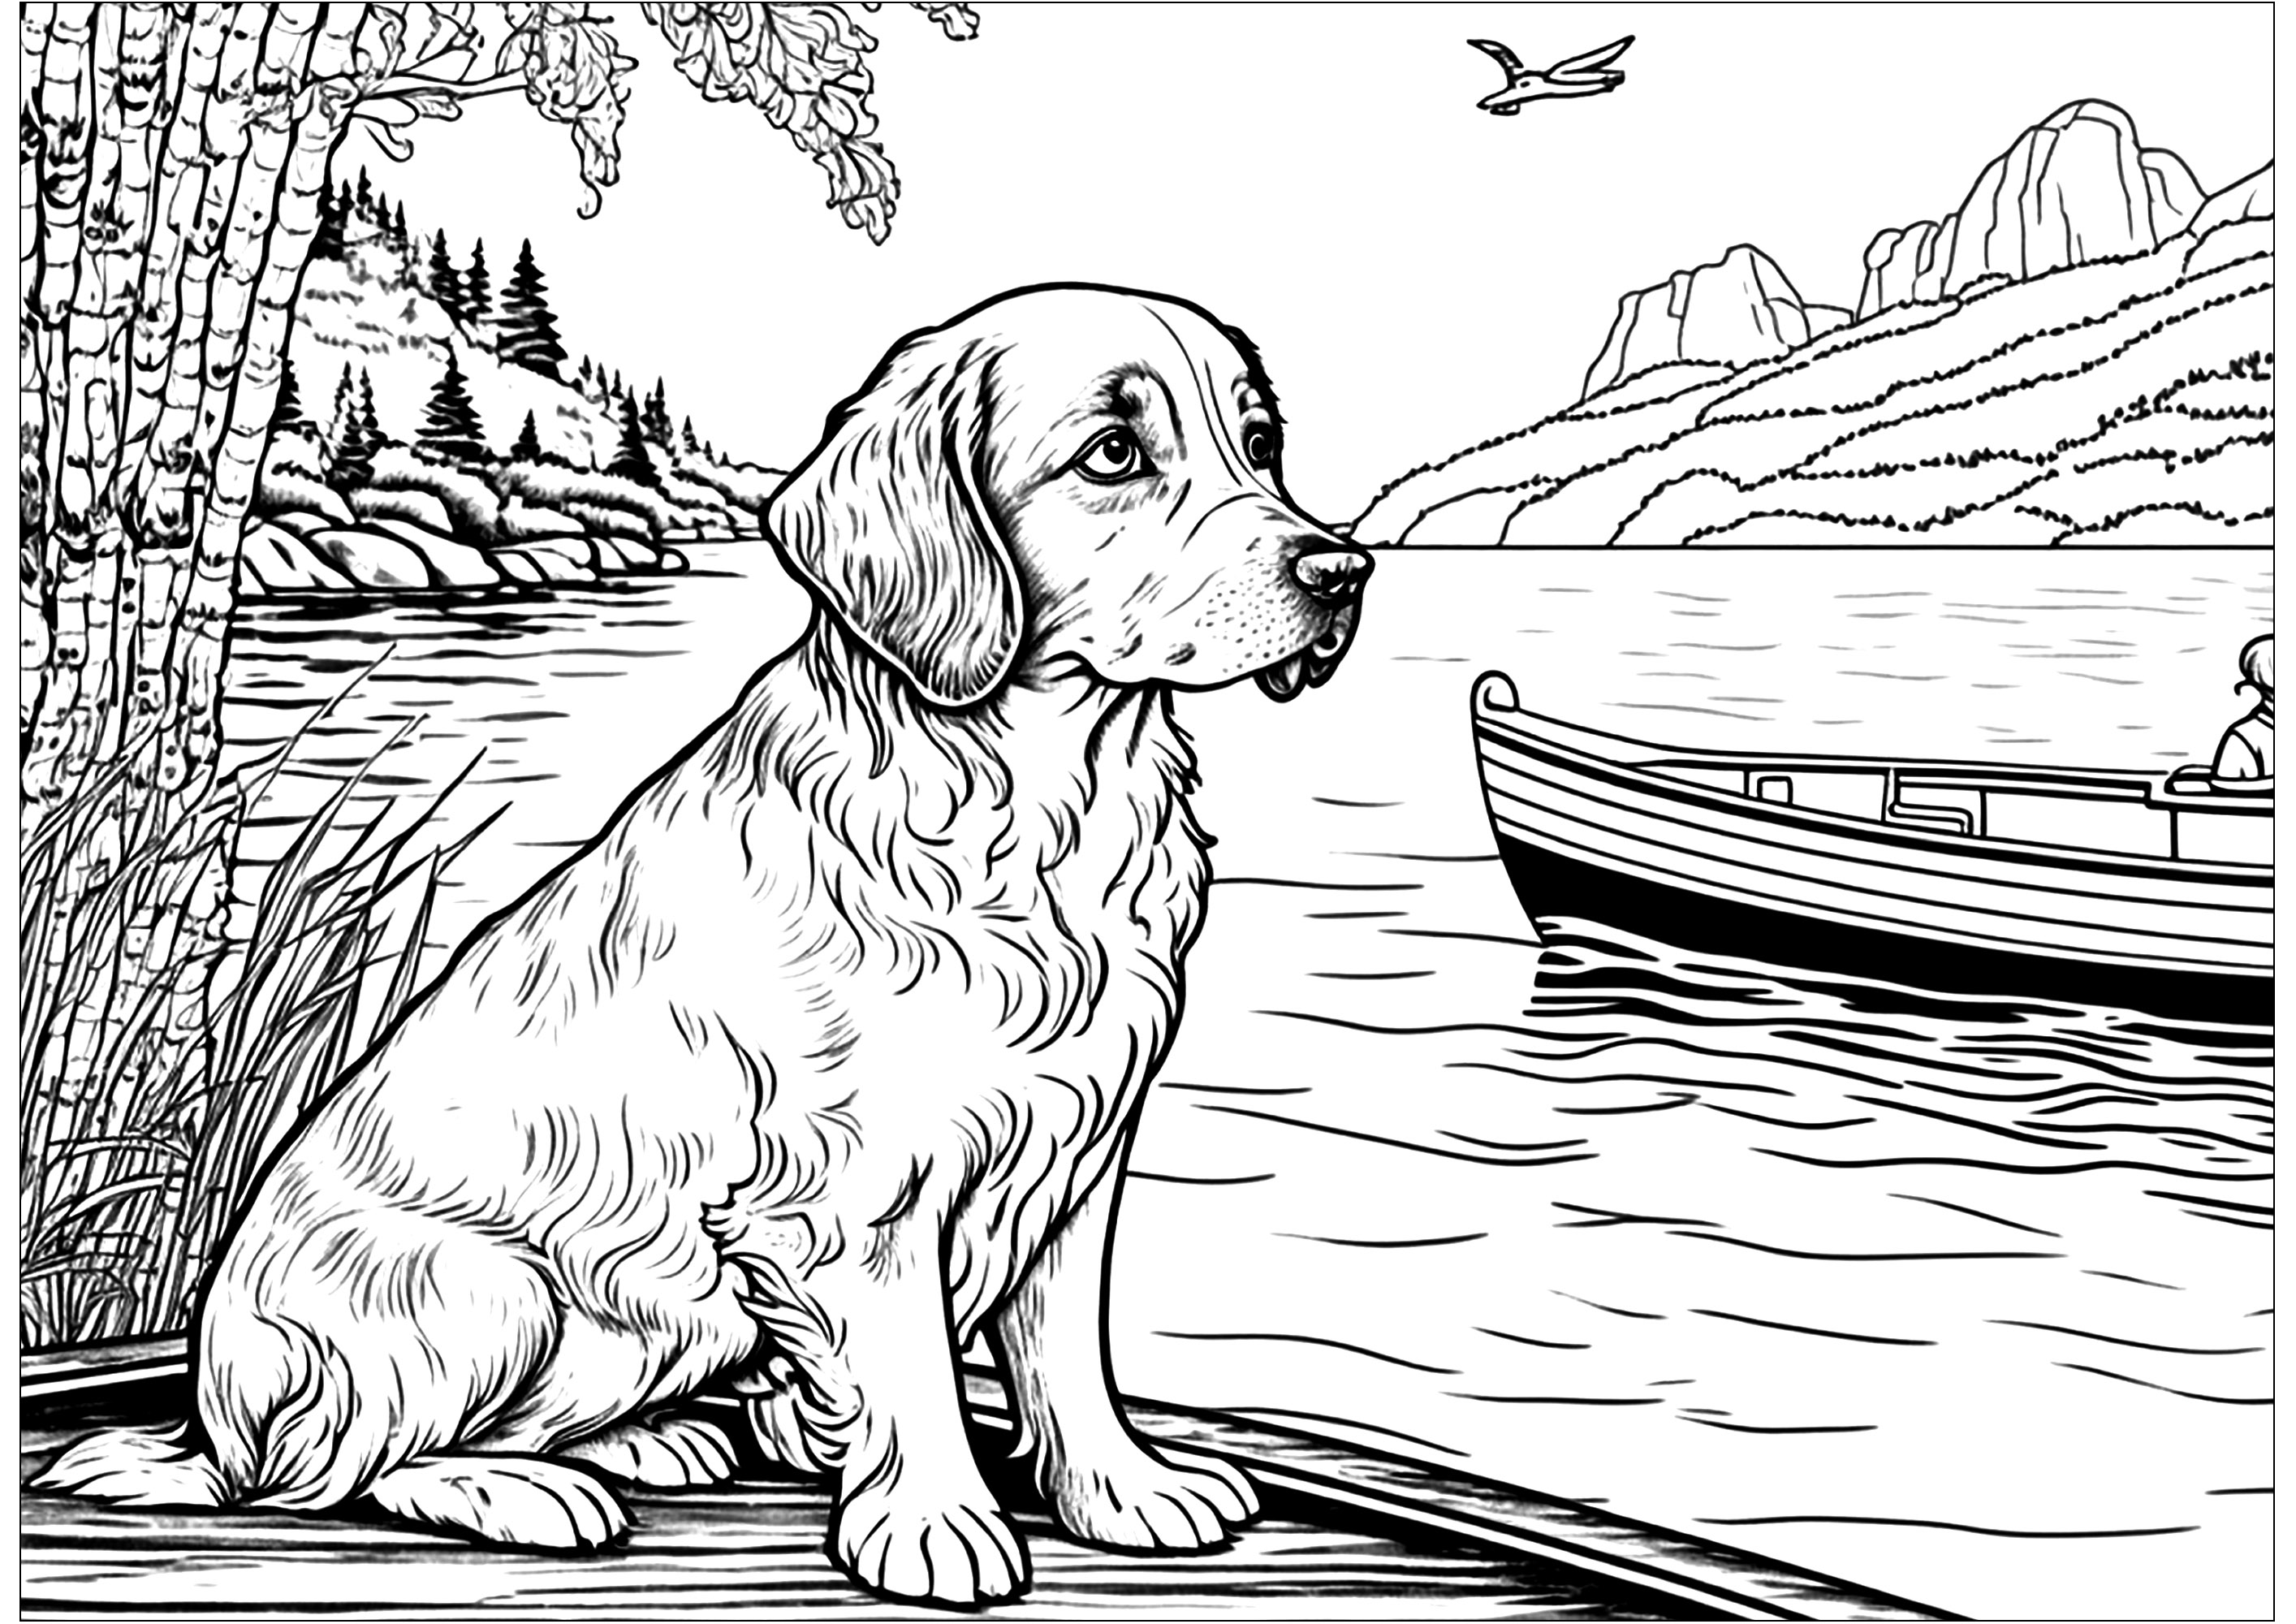 Chien sur la berge, regardant un bateau. Un chien très calme sur la berge d'un lac, regardant passer un bateau.Joli paysage en arrière-plan : montagne, forêts ...